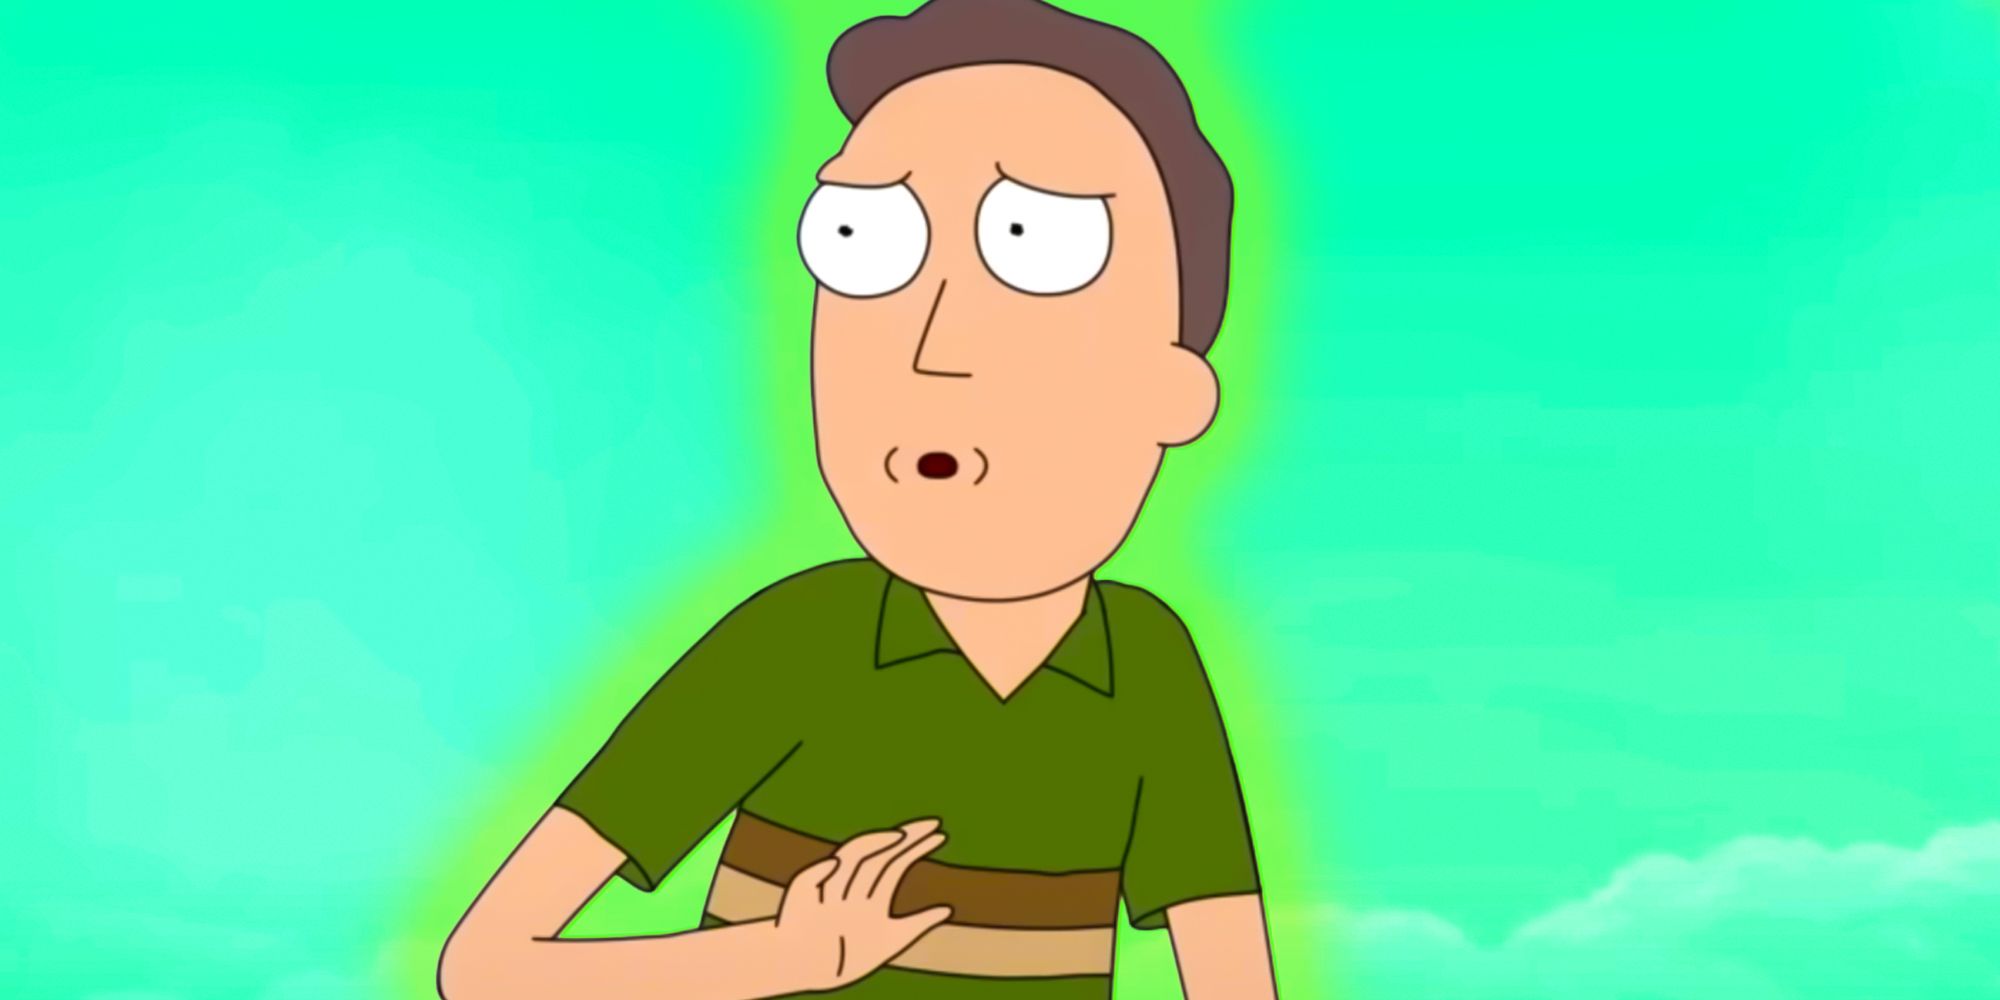 La escena posterior a los créditos de Rick & Morty temporada 7 episodio 9 presenta al enemigo más impactante de Rick hasta el momento